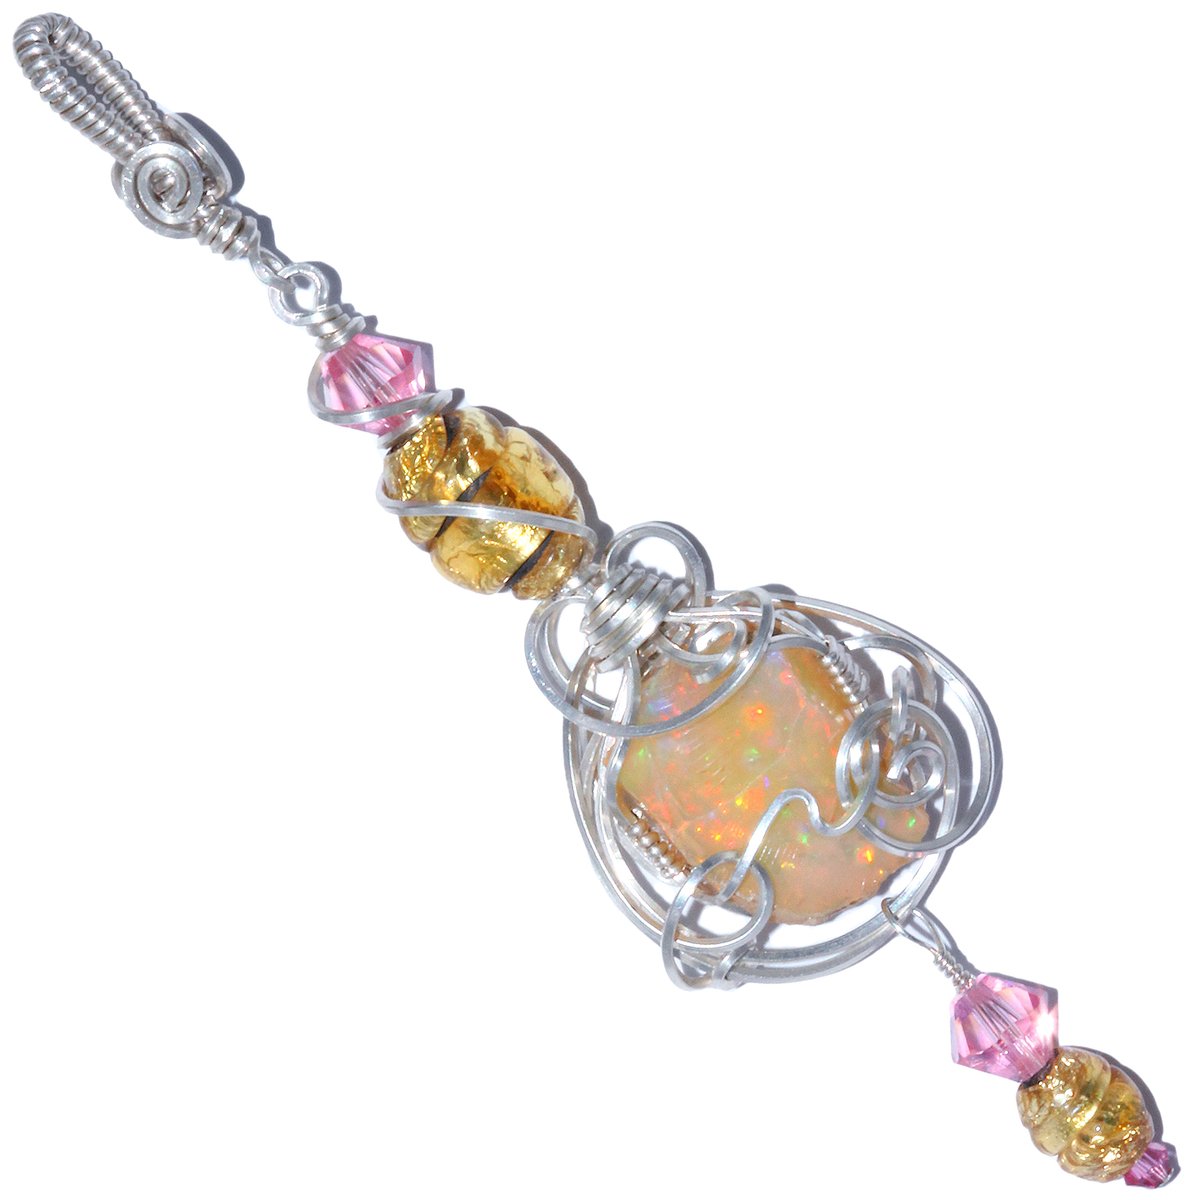 Ethiopian Opal Pendant with Antique Venetian Glass Foil Beads